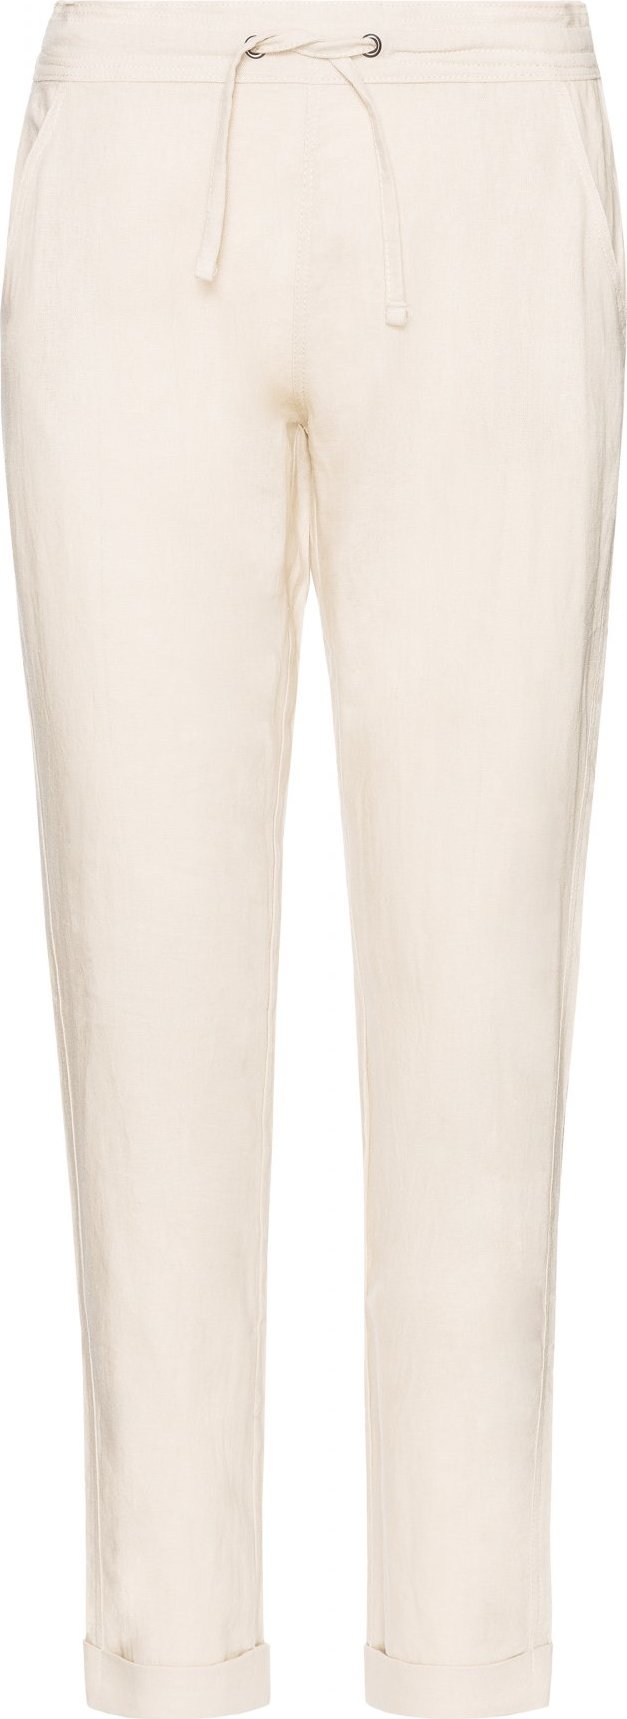 Dámské kalhoty SAM 73 Ayhama růžové Velikost: XL